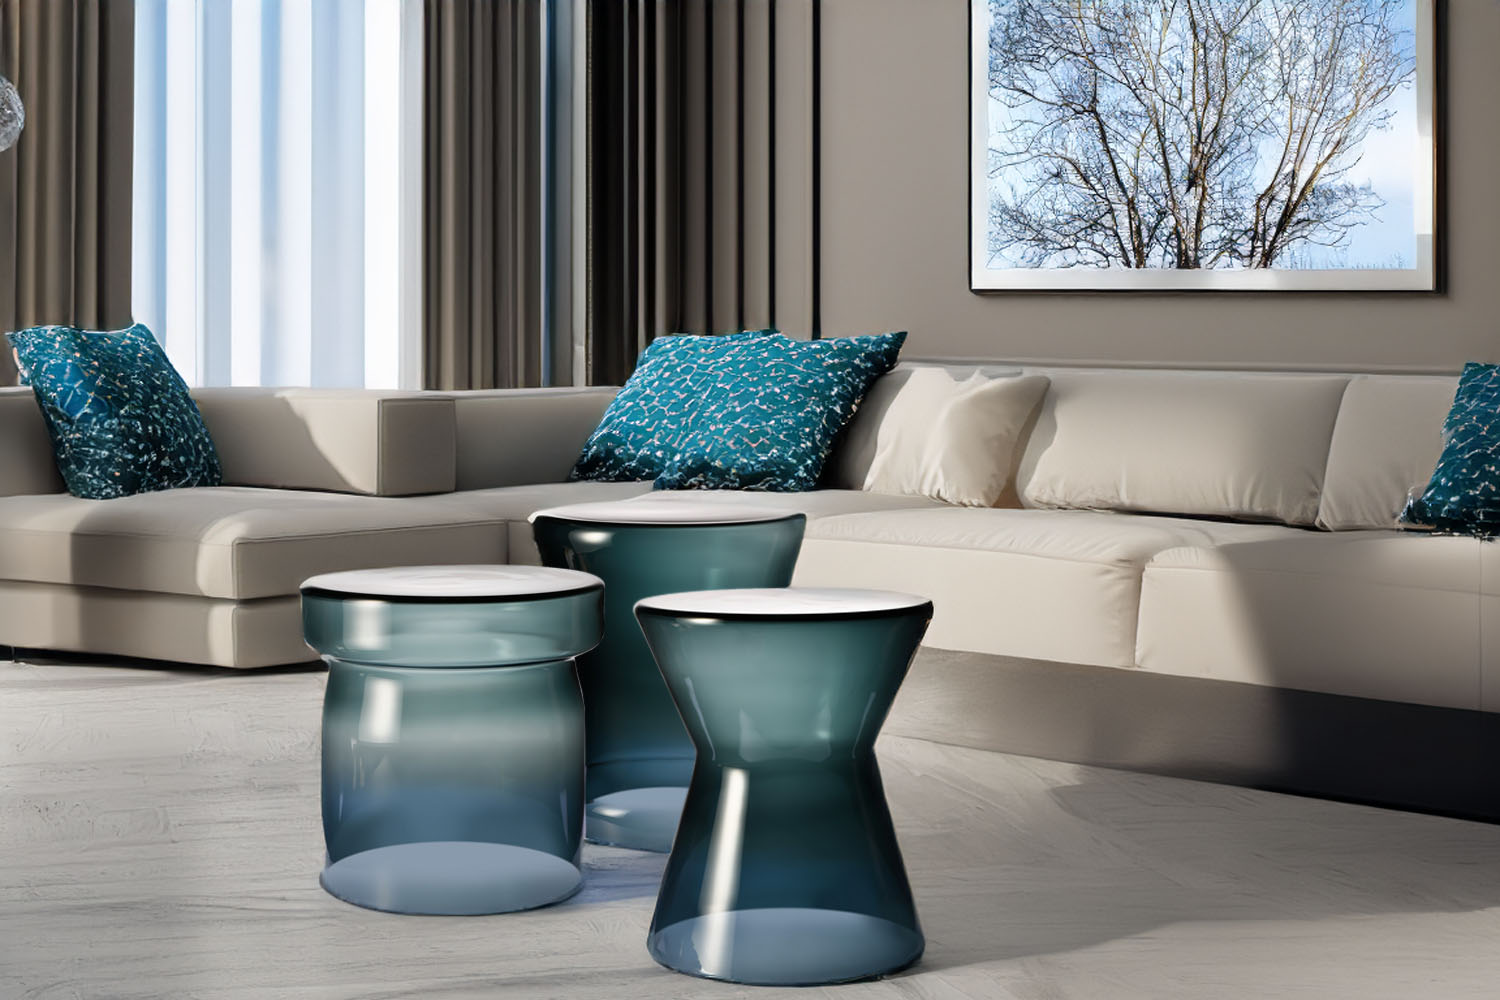 Objevte eleganci a styl s novou kolekcí konferenčních stolků od Krosno Glass